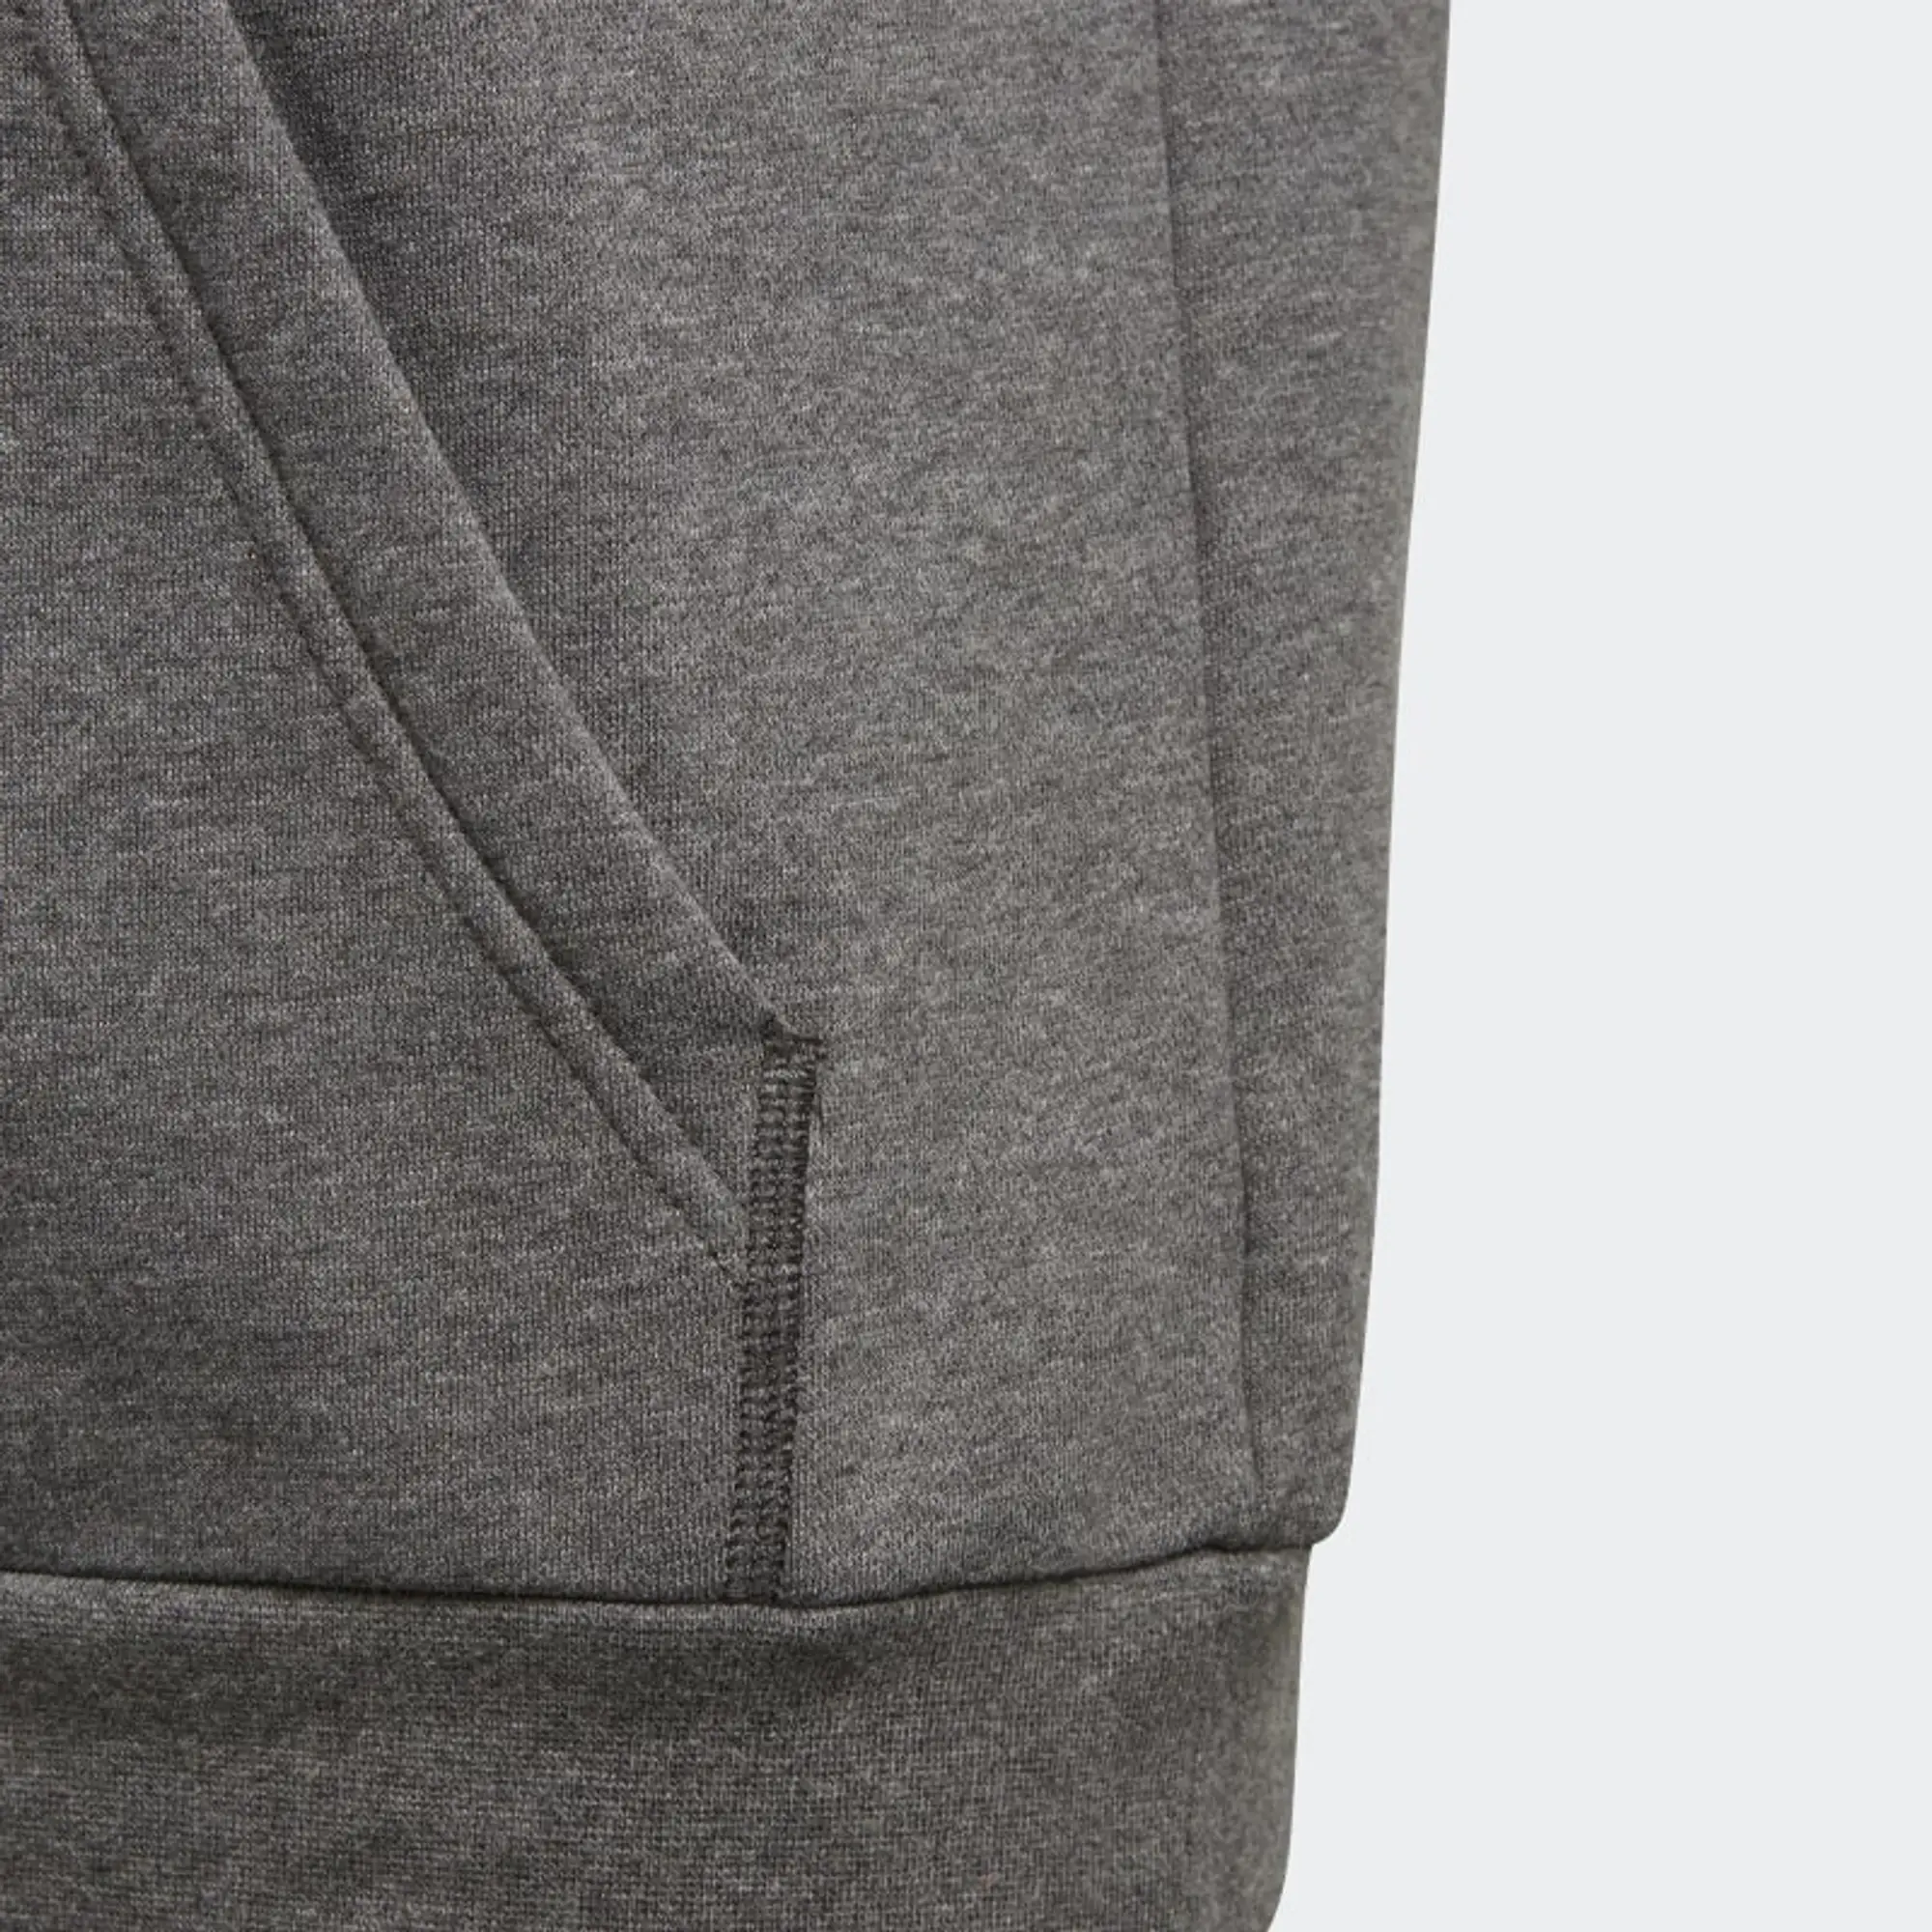 Adidas Core 18 Hoodie  - Grey